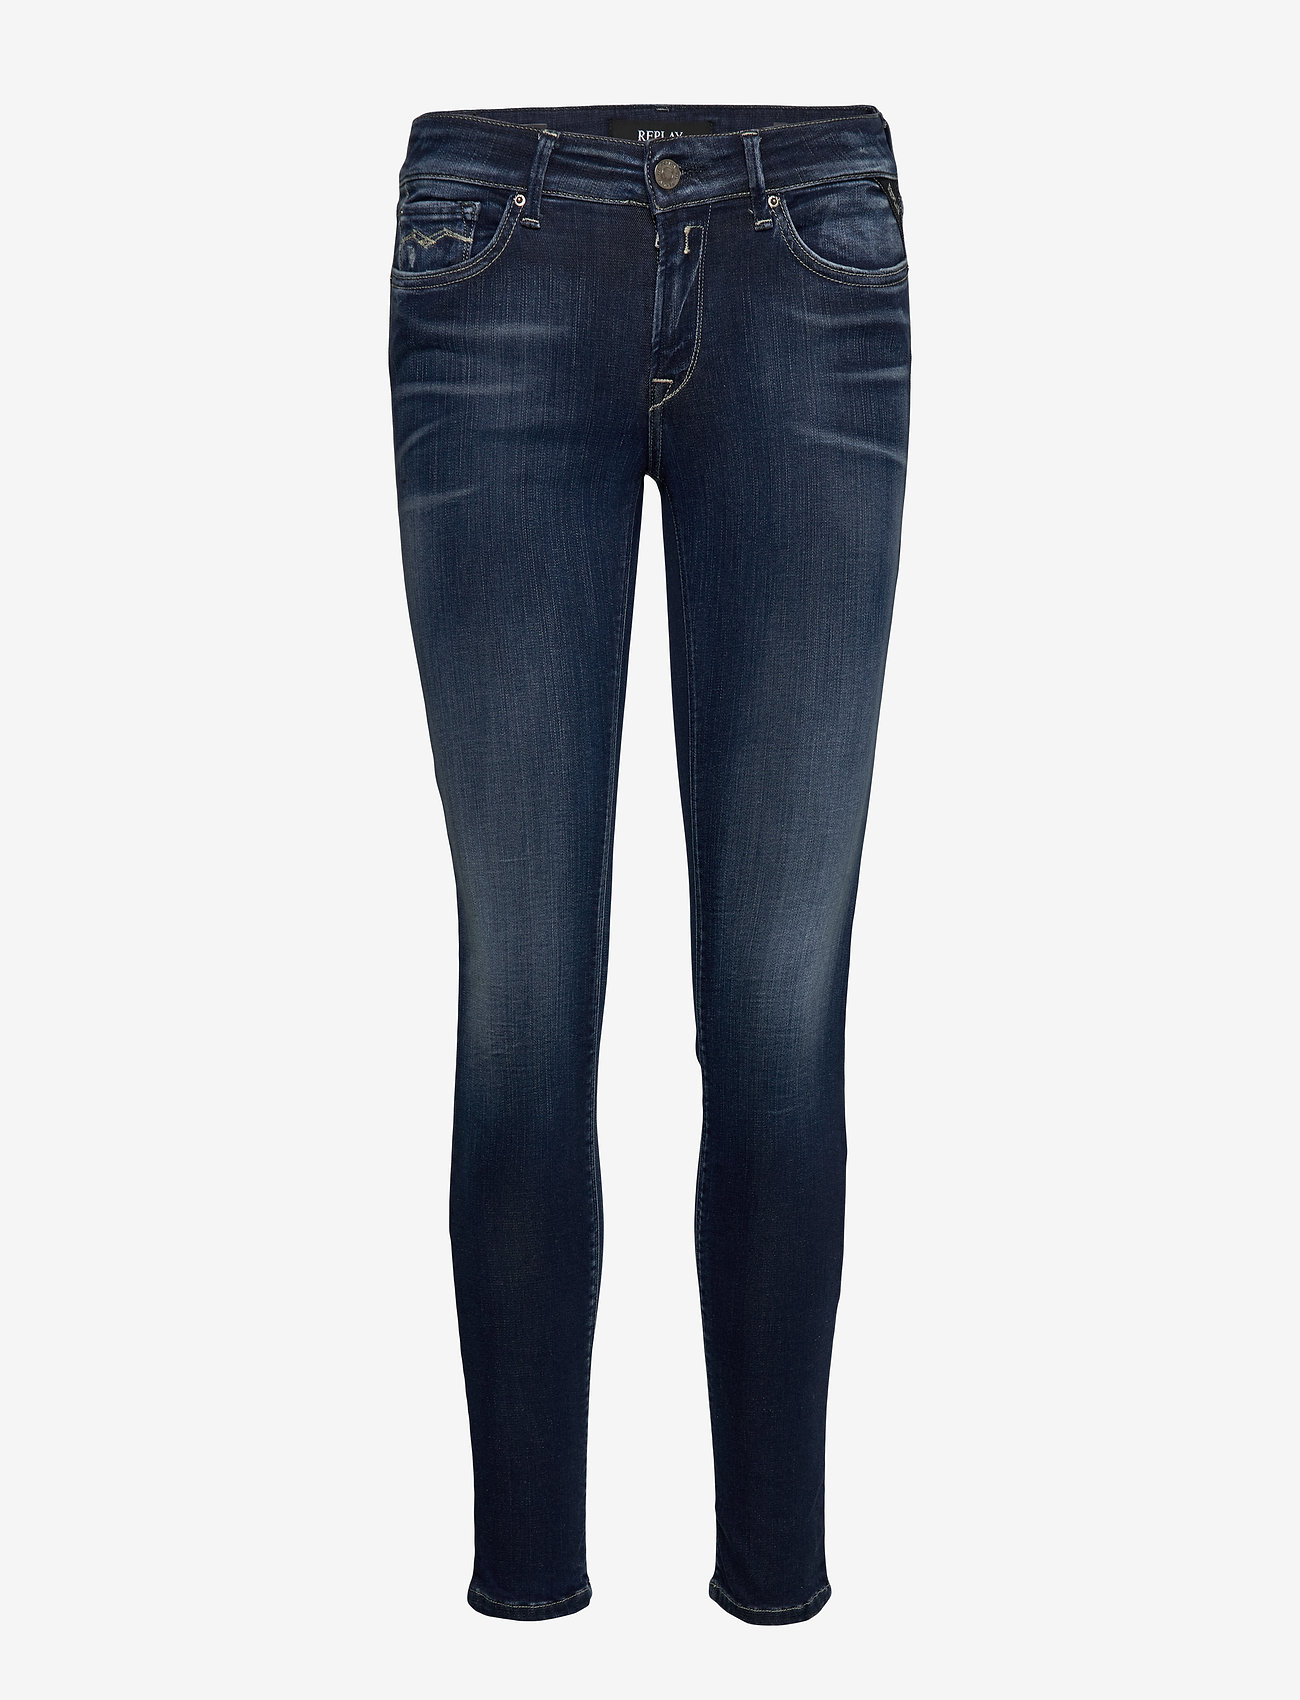 Replay - NEW LUZ - skinny jeans - dark blue - 0